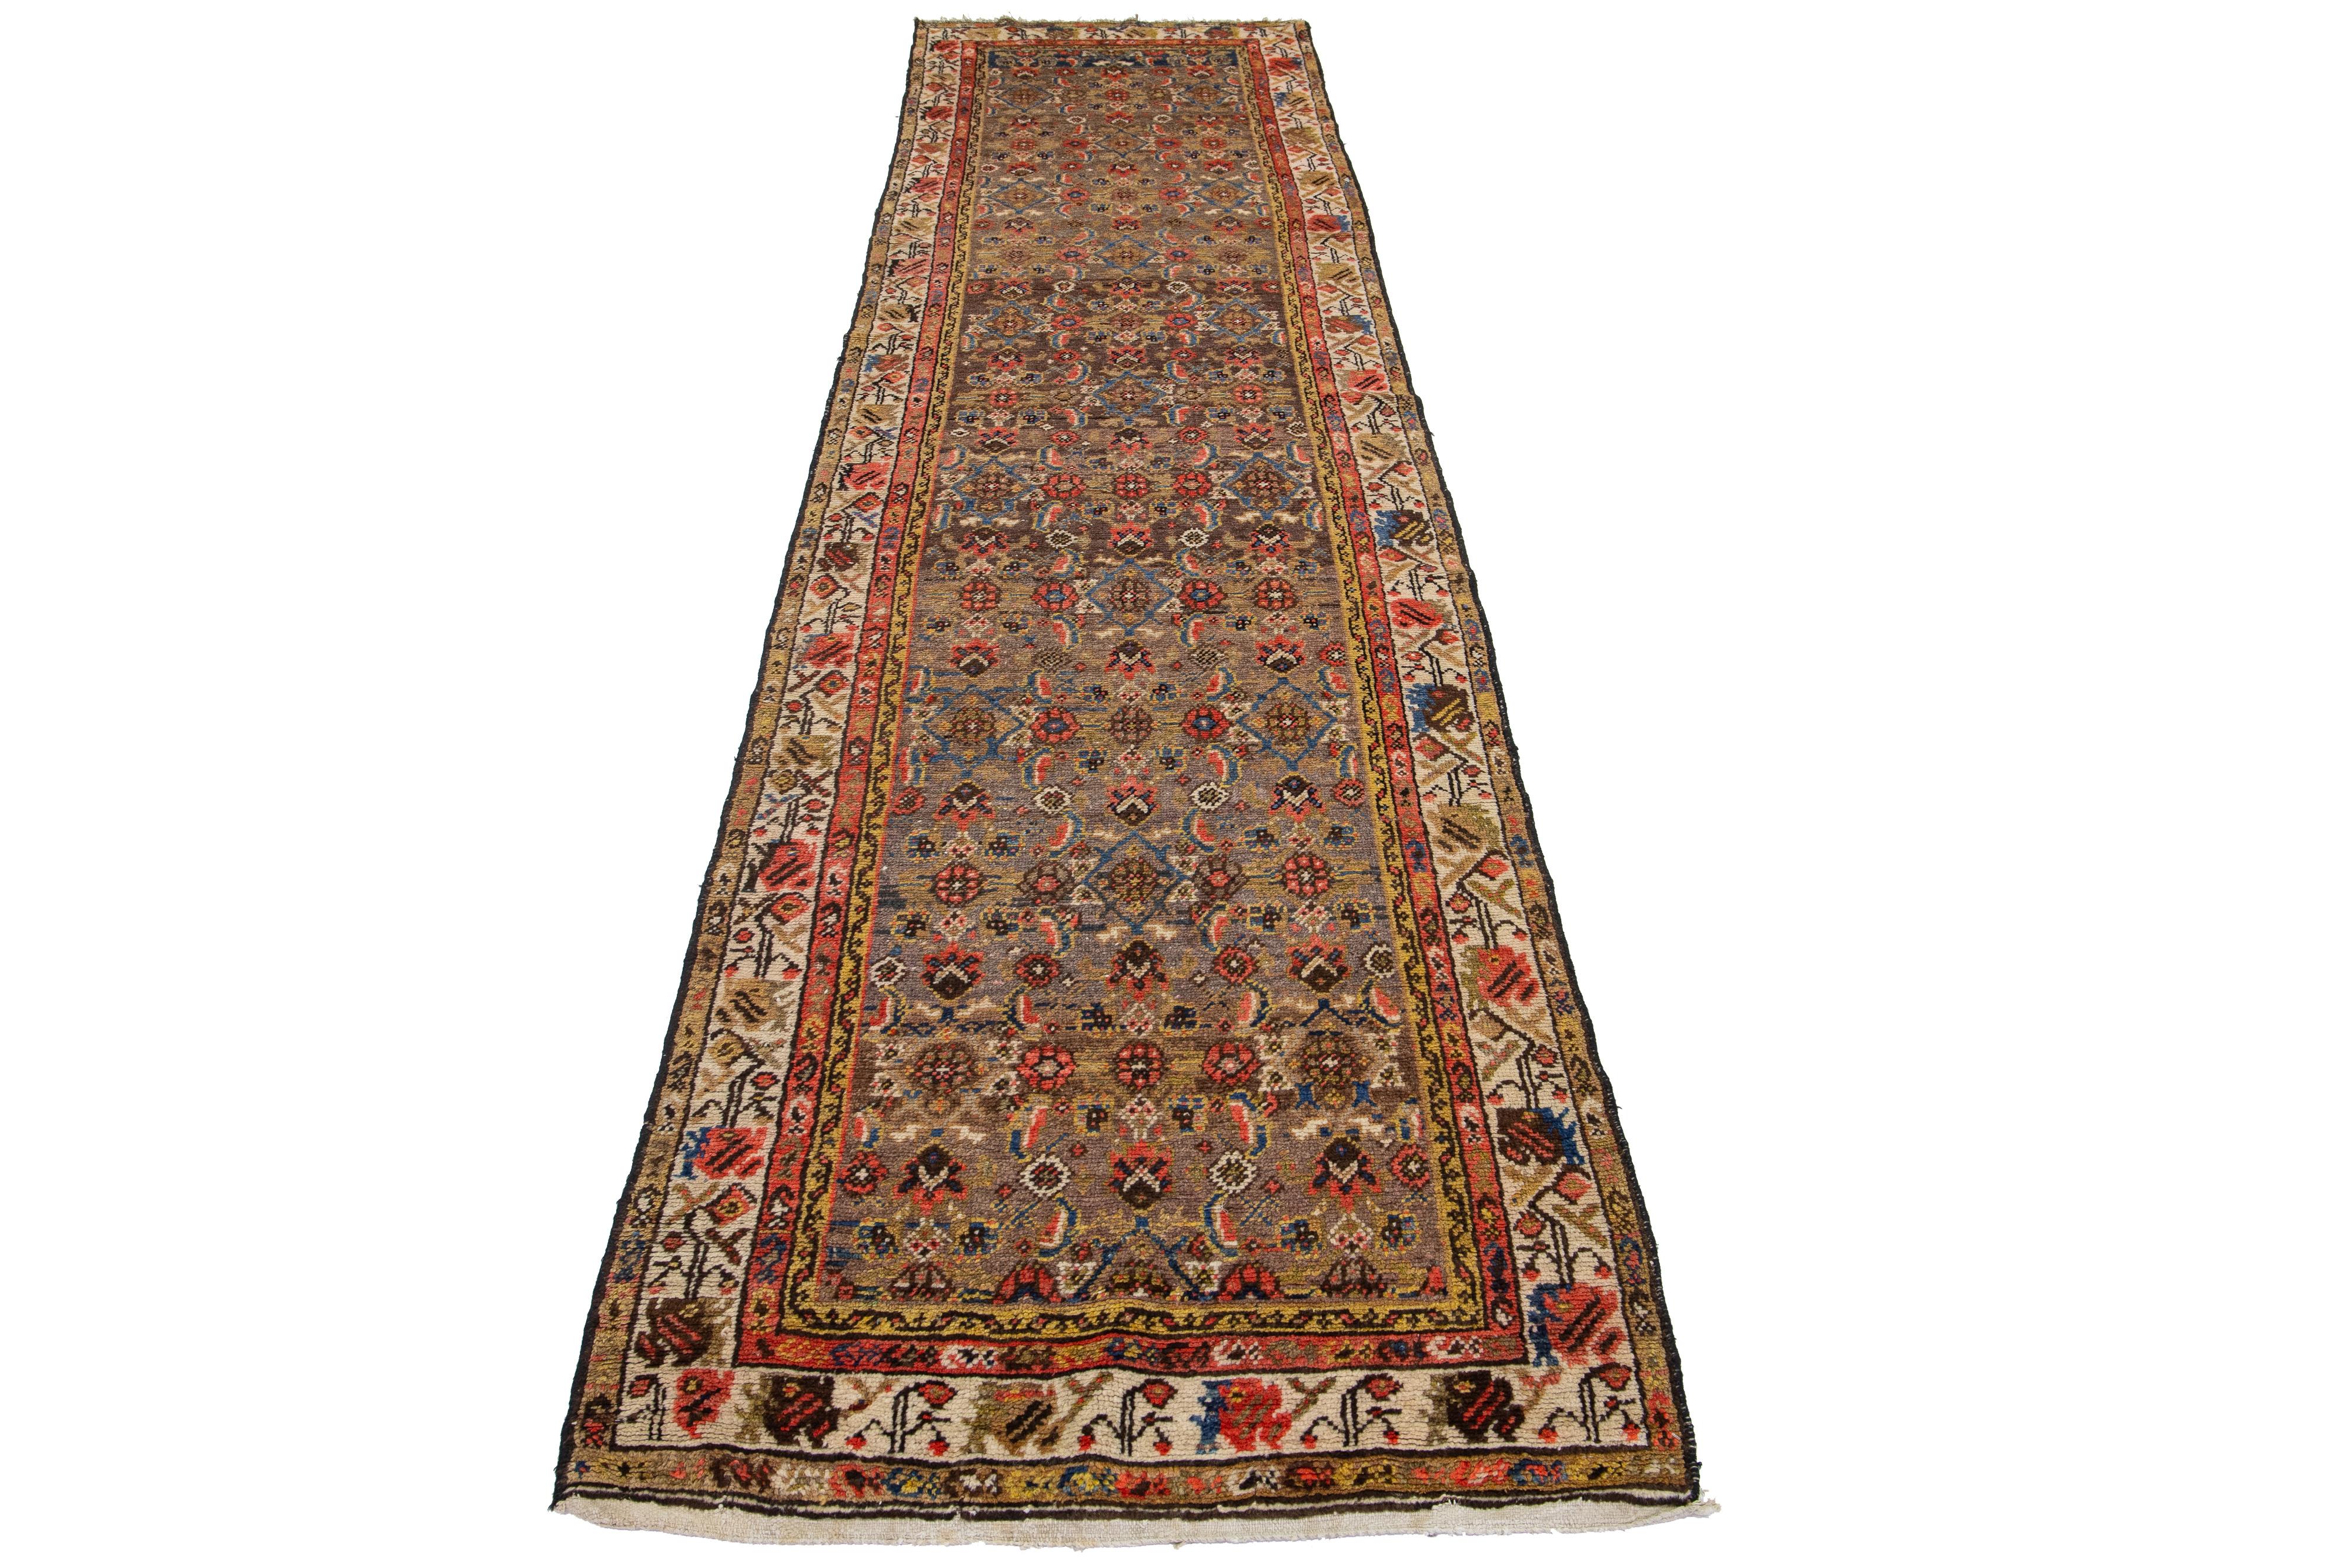 Dieser antike Hamadan-Läufer ist aus handgeknüpfter Wolle gefertigt und zeigt ein braunes Feld, das durch ein fesselndes Blumenmuster mit blauen, beigen und rostfarbenen Akzenten aufgewertet wird.

Dieser Teppich misst 3'4